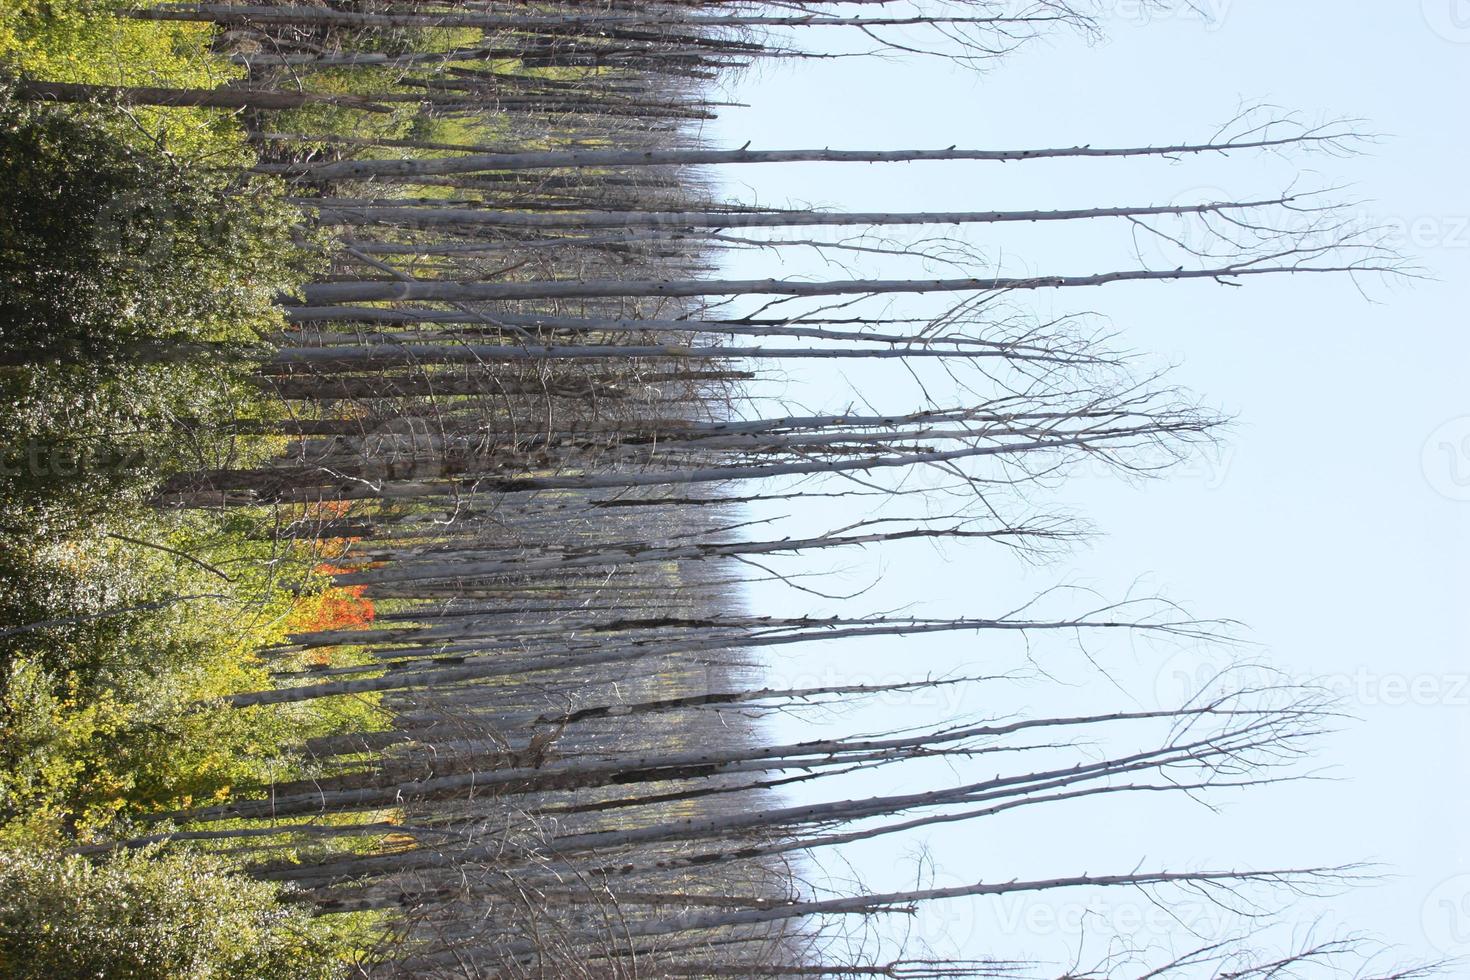 Choupos exuberantes tomando conta dos restos de pinheiro ponderosea carbonizado na floresta nacional de Gila foto